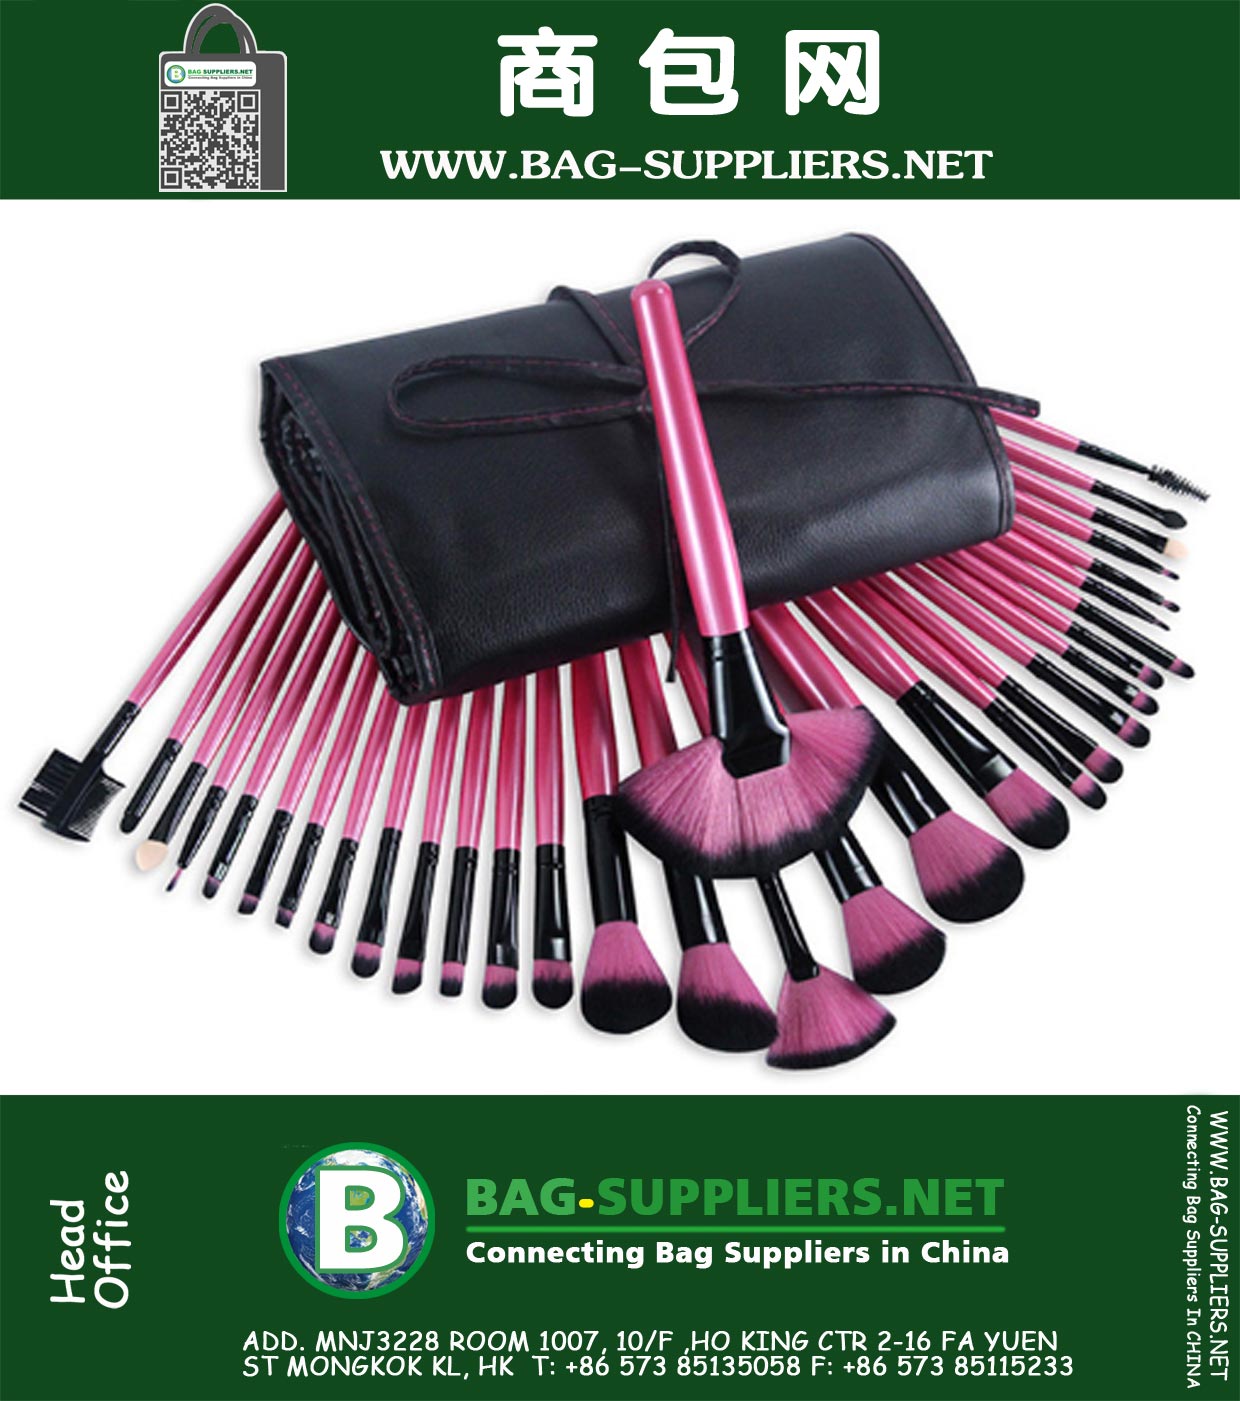 32pcs Rose Red Professional Soft Косметические кисти для макияжа Набор Kit и мешочек Сумка женщина Макияж Инструменты Pincel Maquiagem